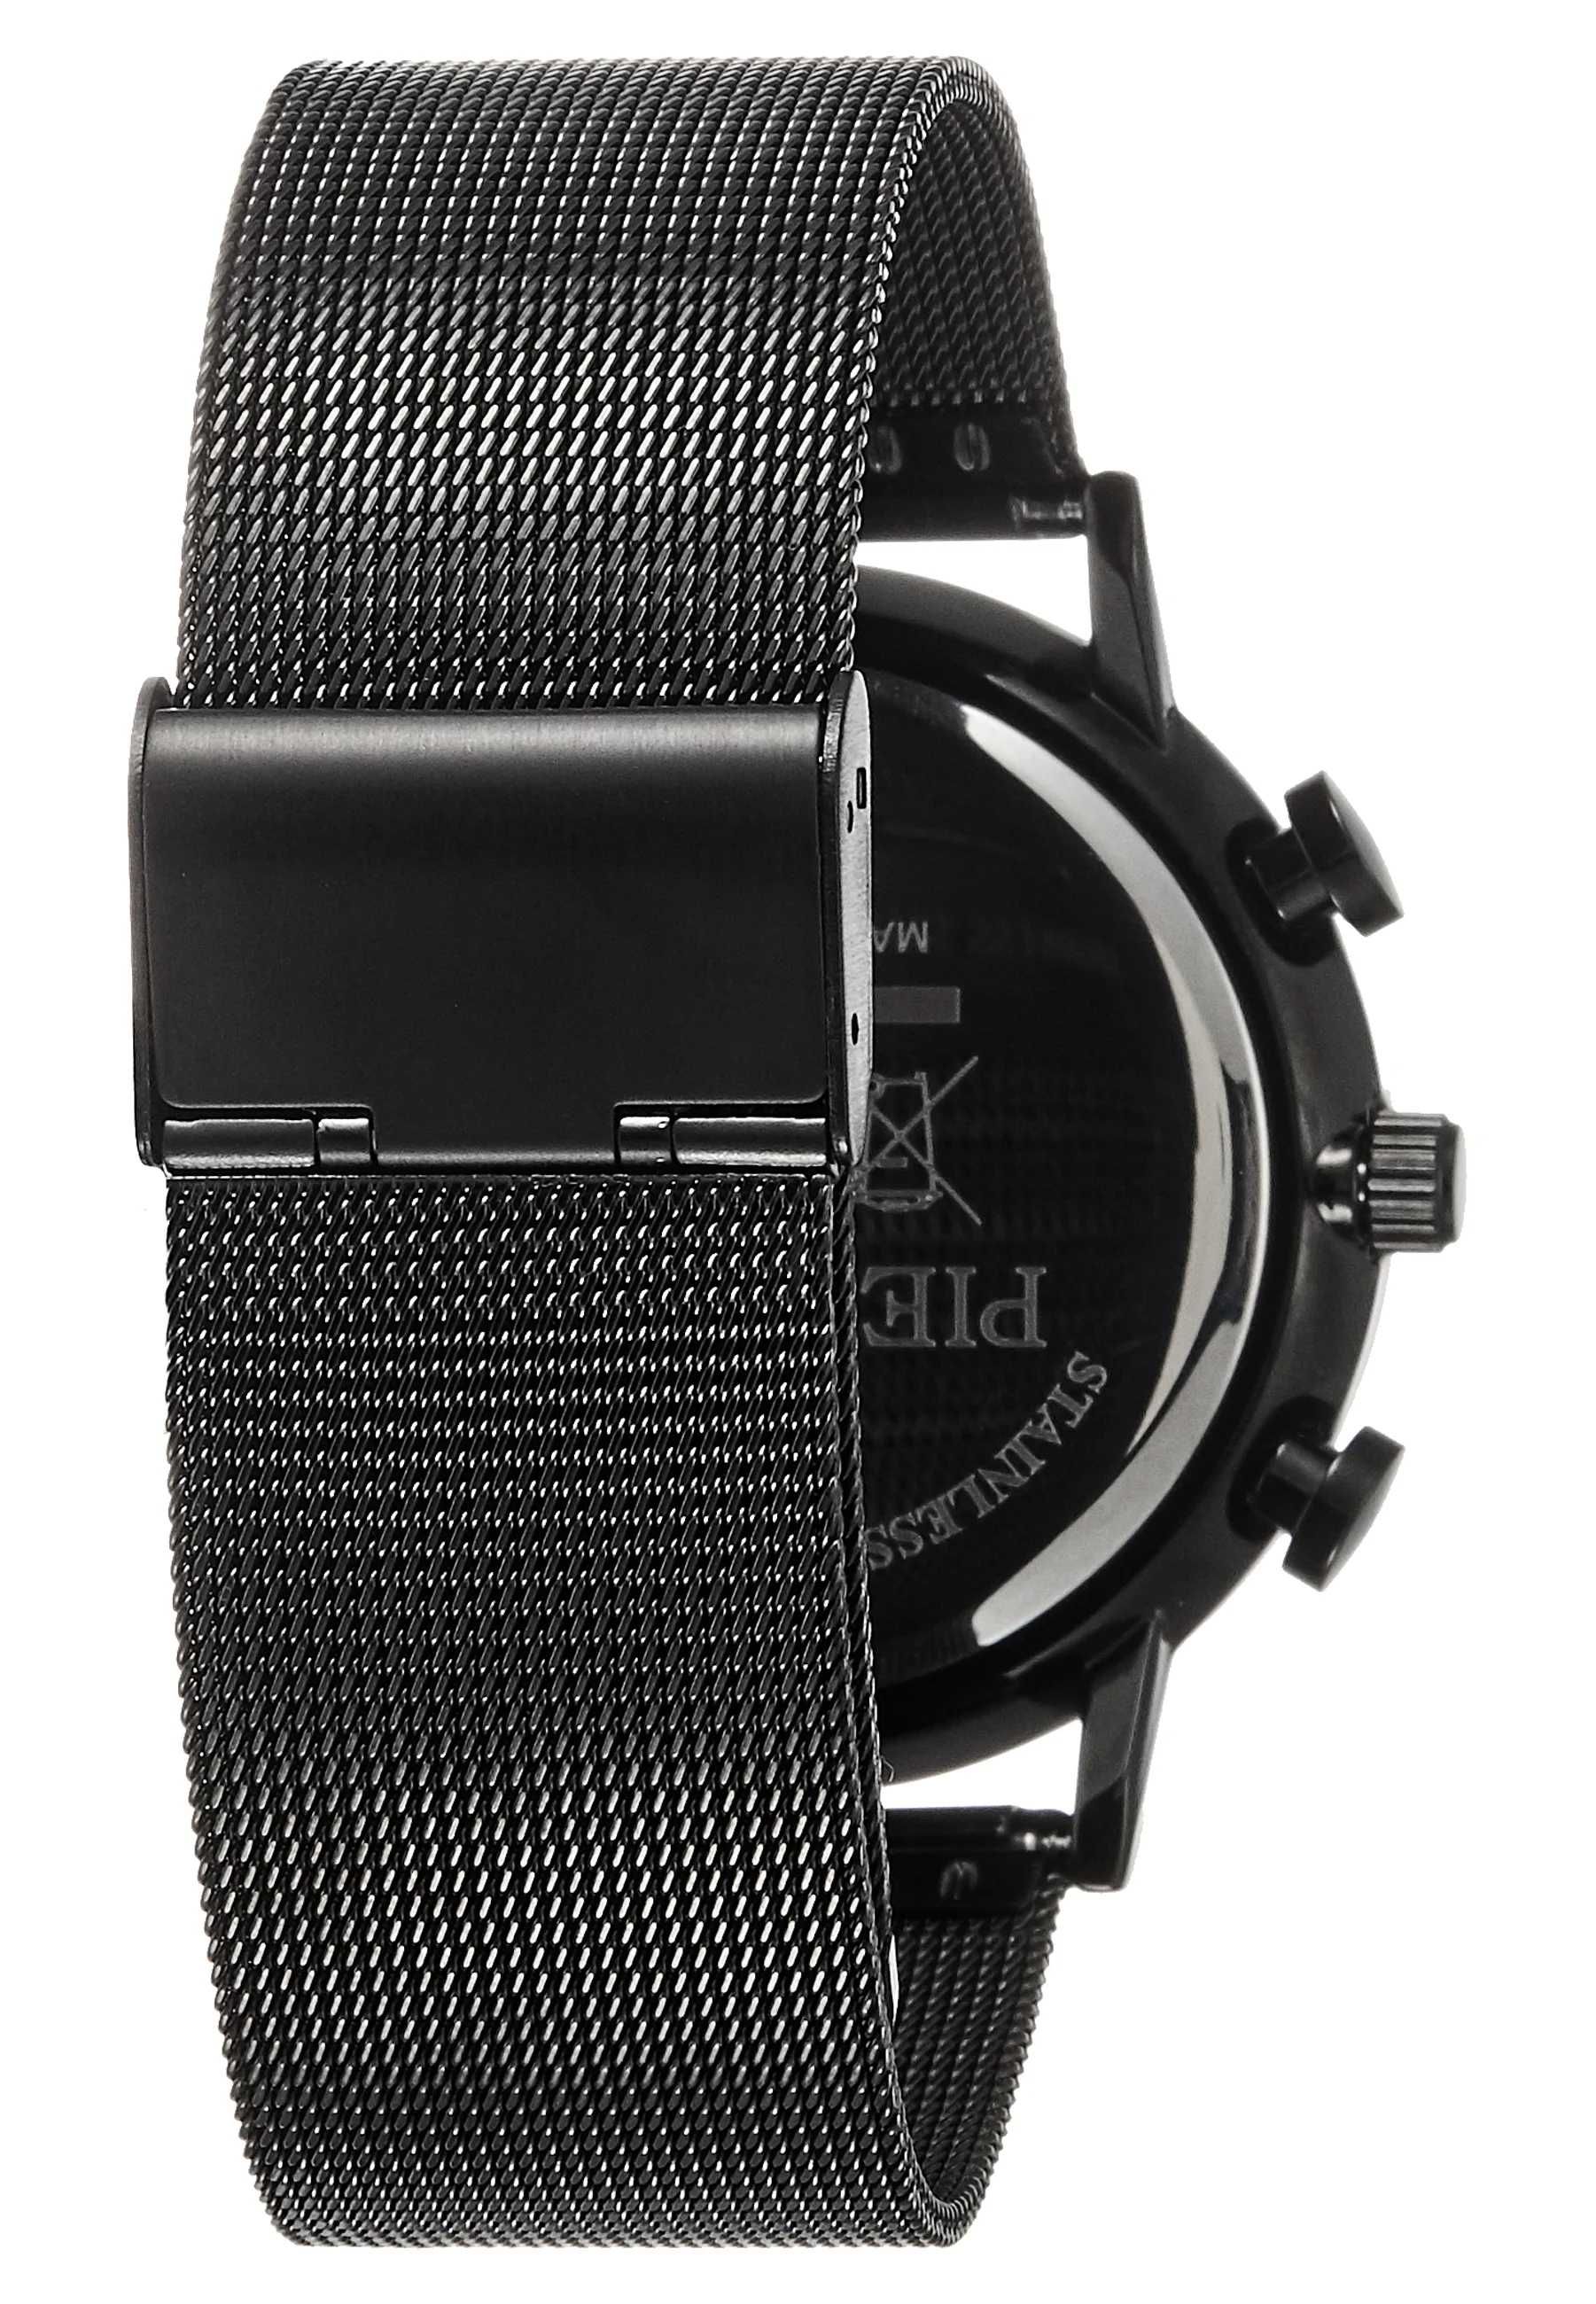 Zestaw elegancki czarny brązowy zegarek z wymiennymi paskami PREZENT